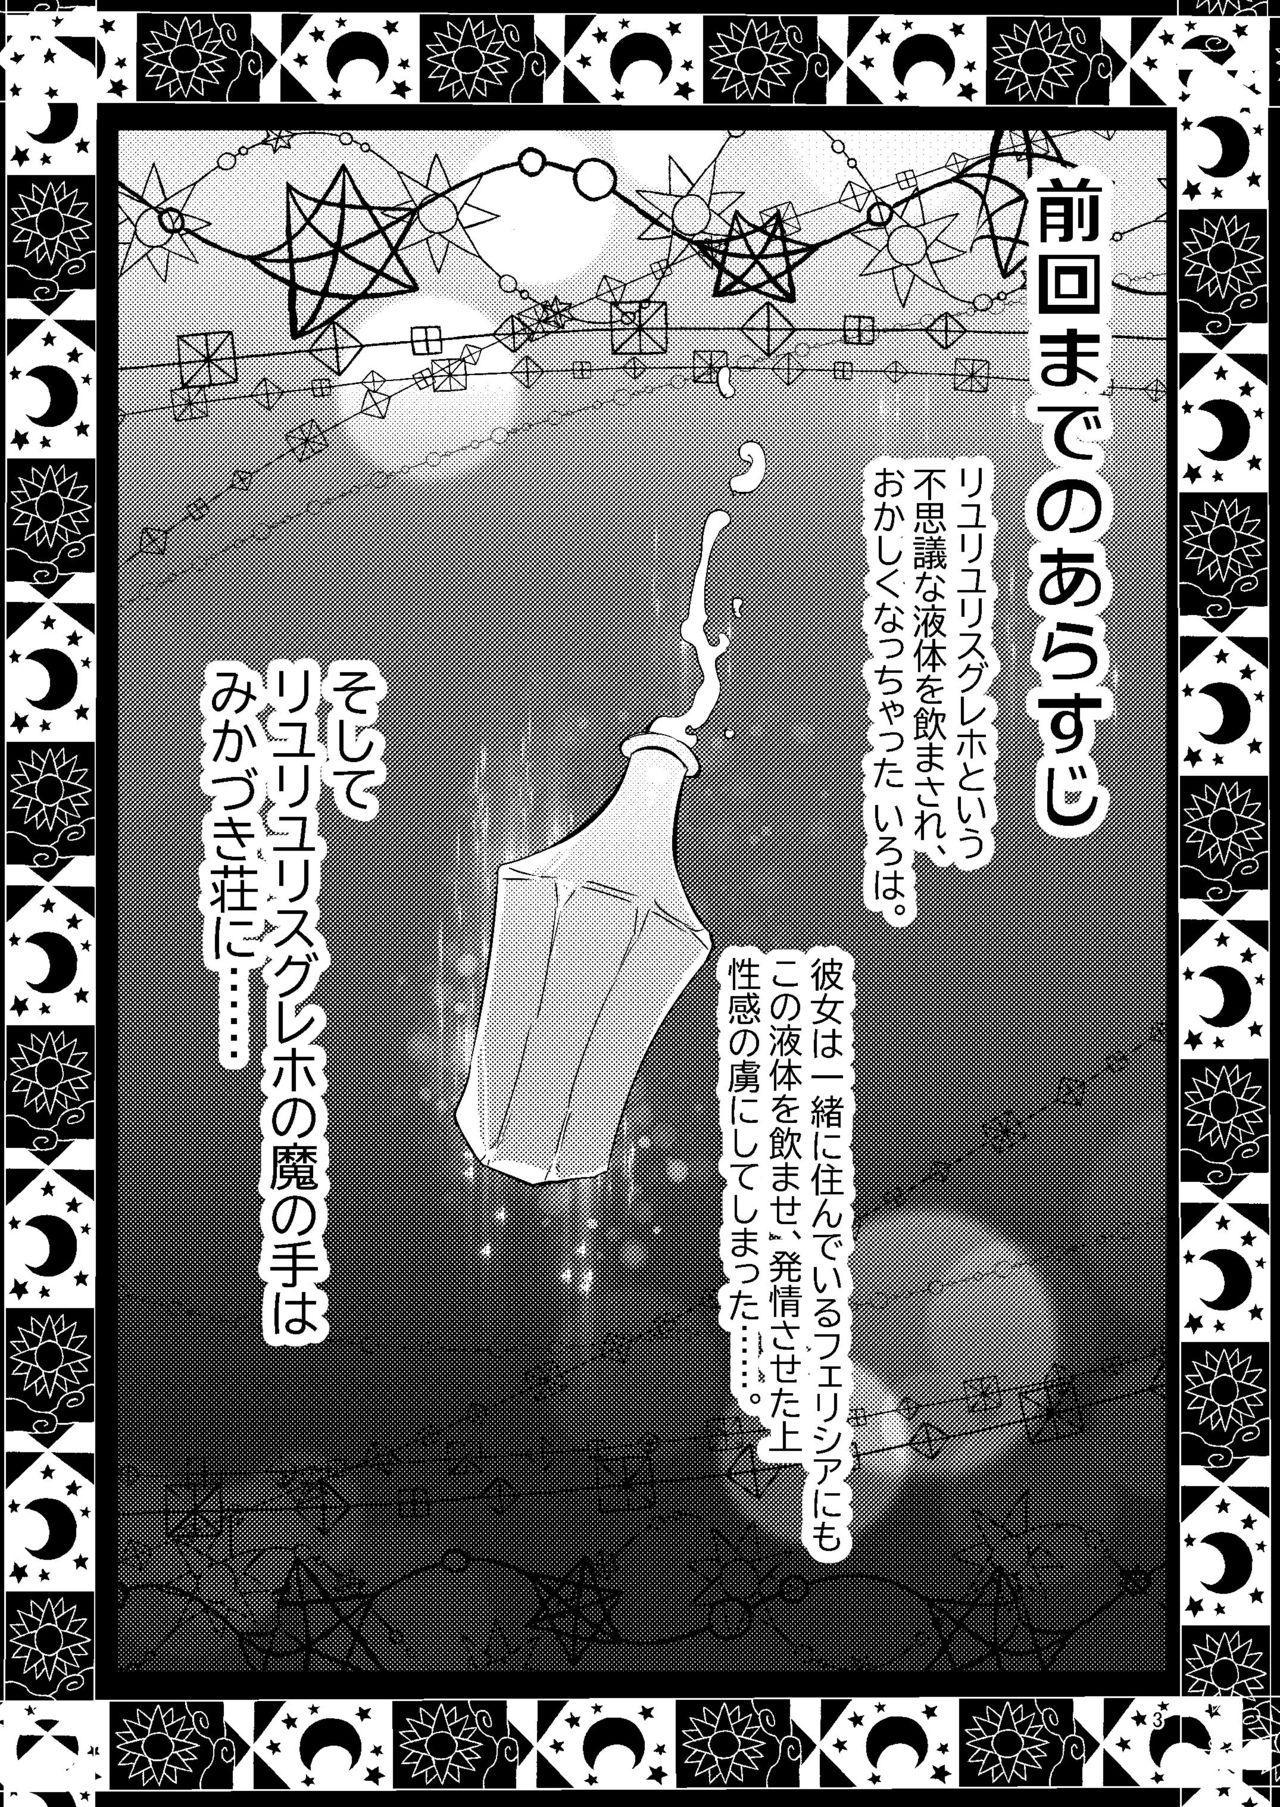 Big Booty Riyuriyu Risugureho no Uwasa 3 - Puella magi madoka magica side story magia record Perrito - Page 2